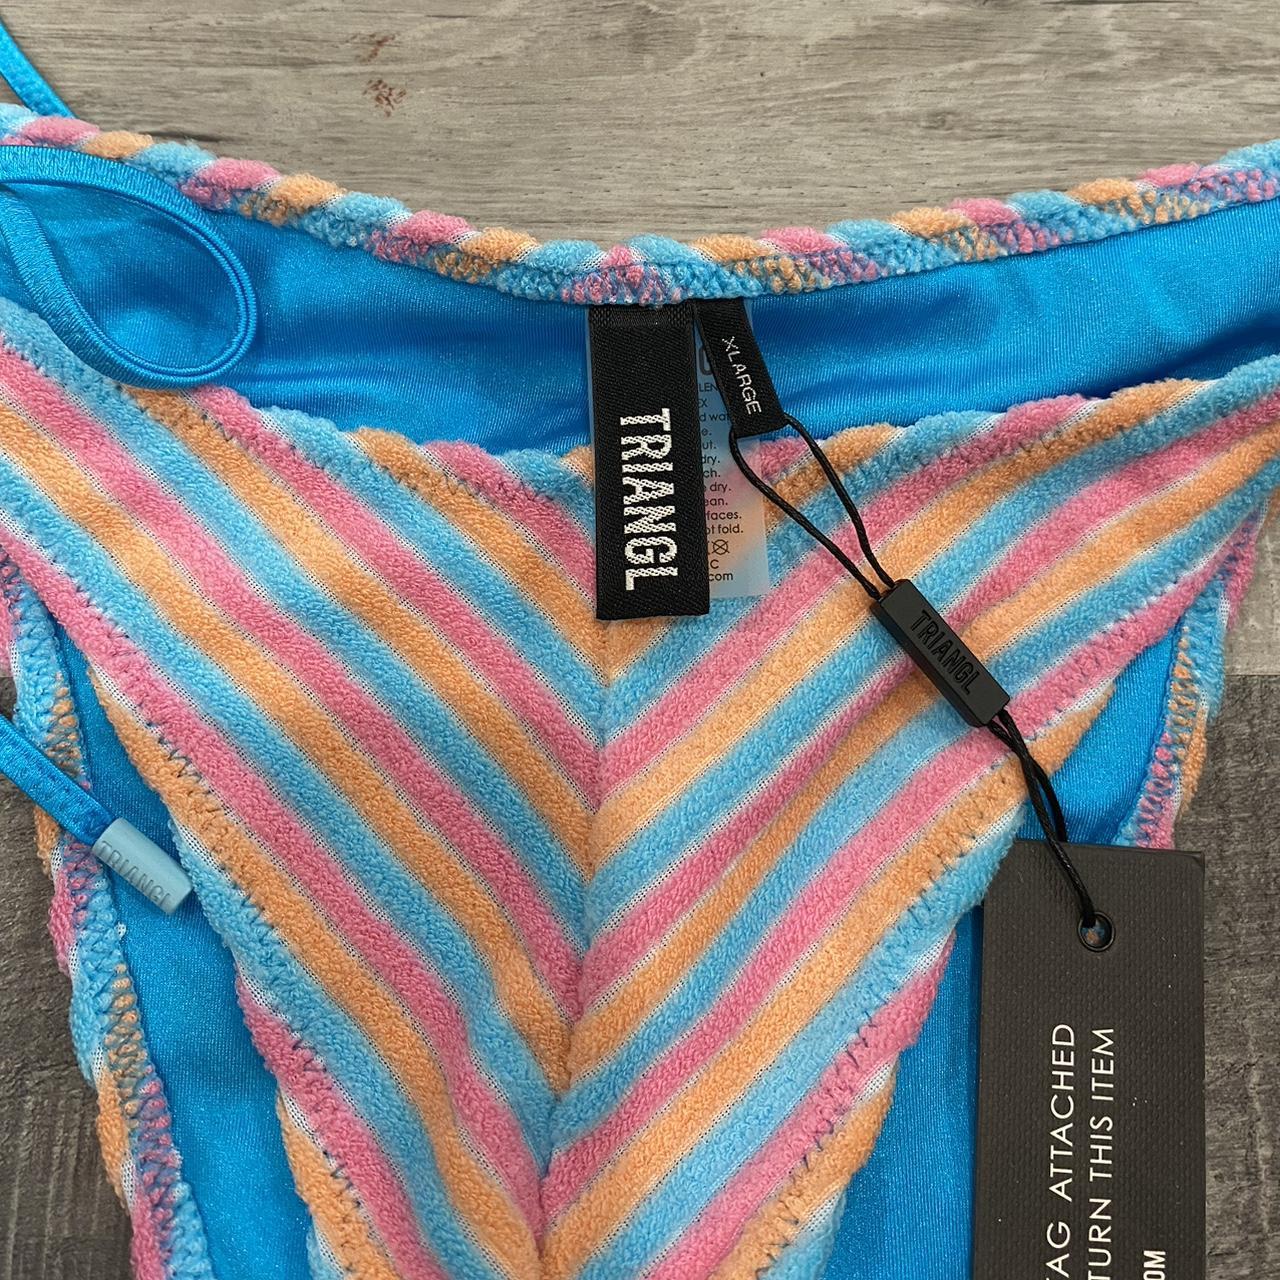 VINCA Sherbet Stripe from Triangl Swimwear. Size XL